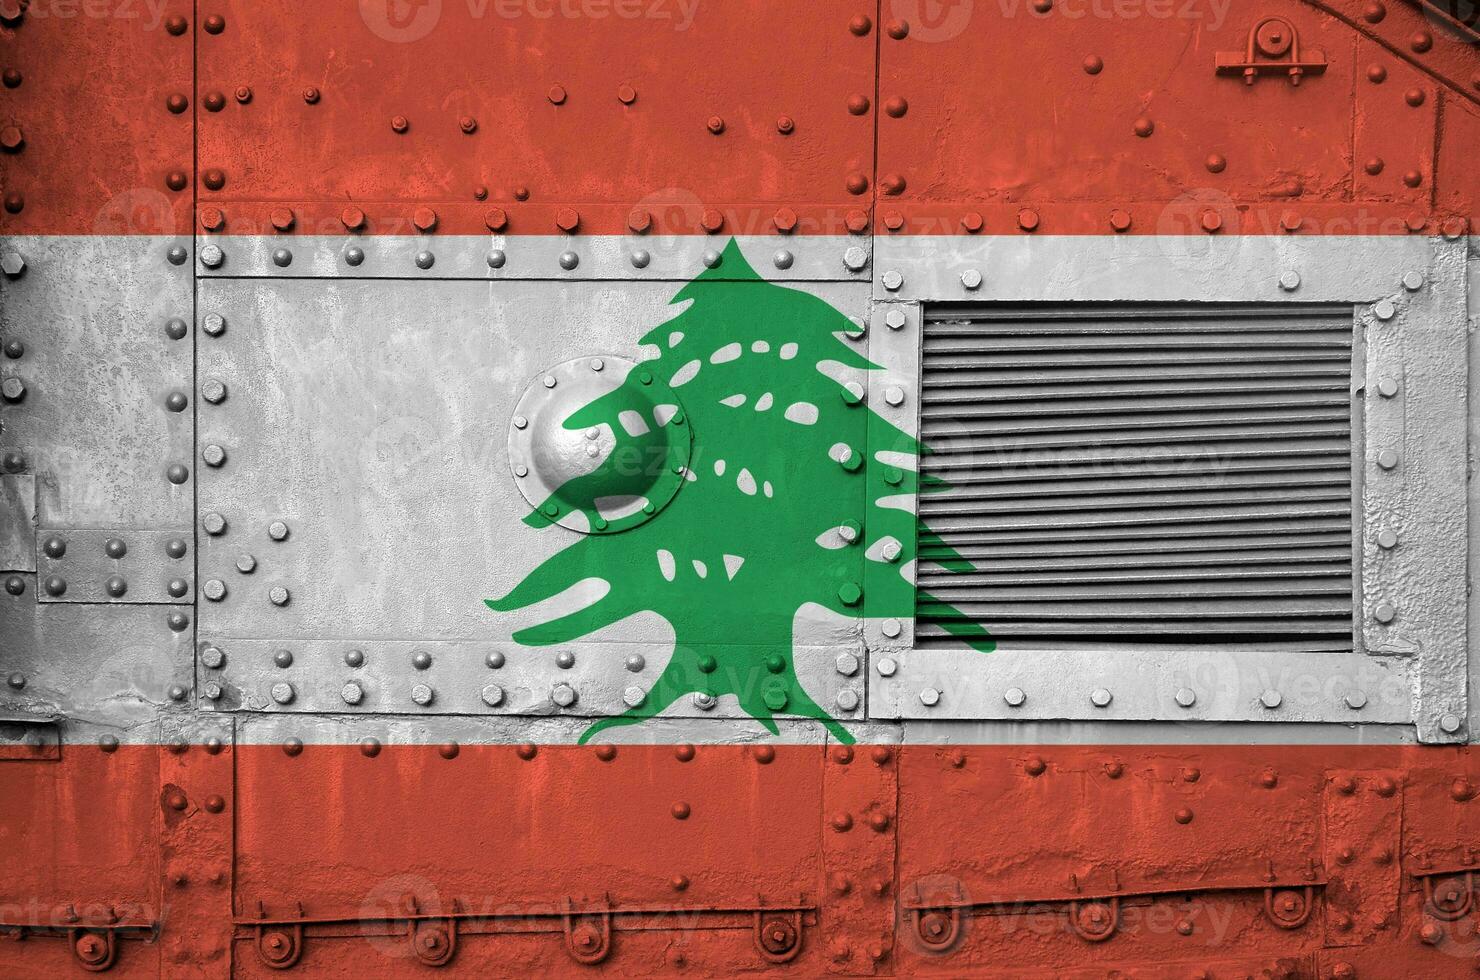 libanon flagga avbildad på sida del av militär armerad tank närbild. armén krafter konceptuell bakgrund foto